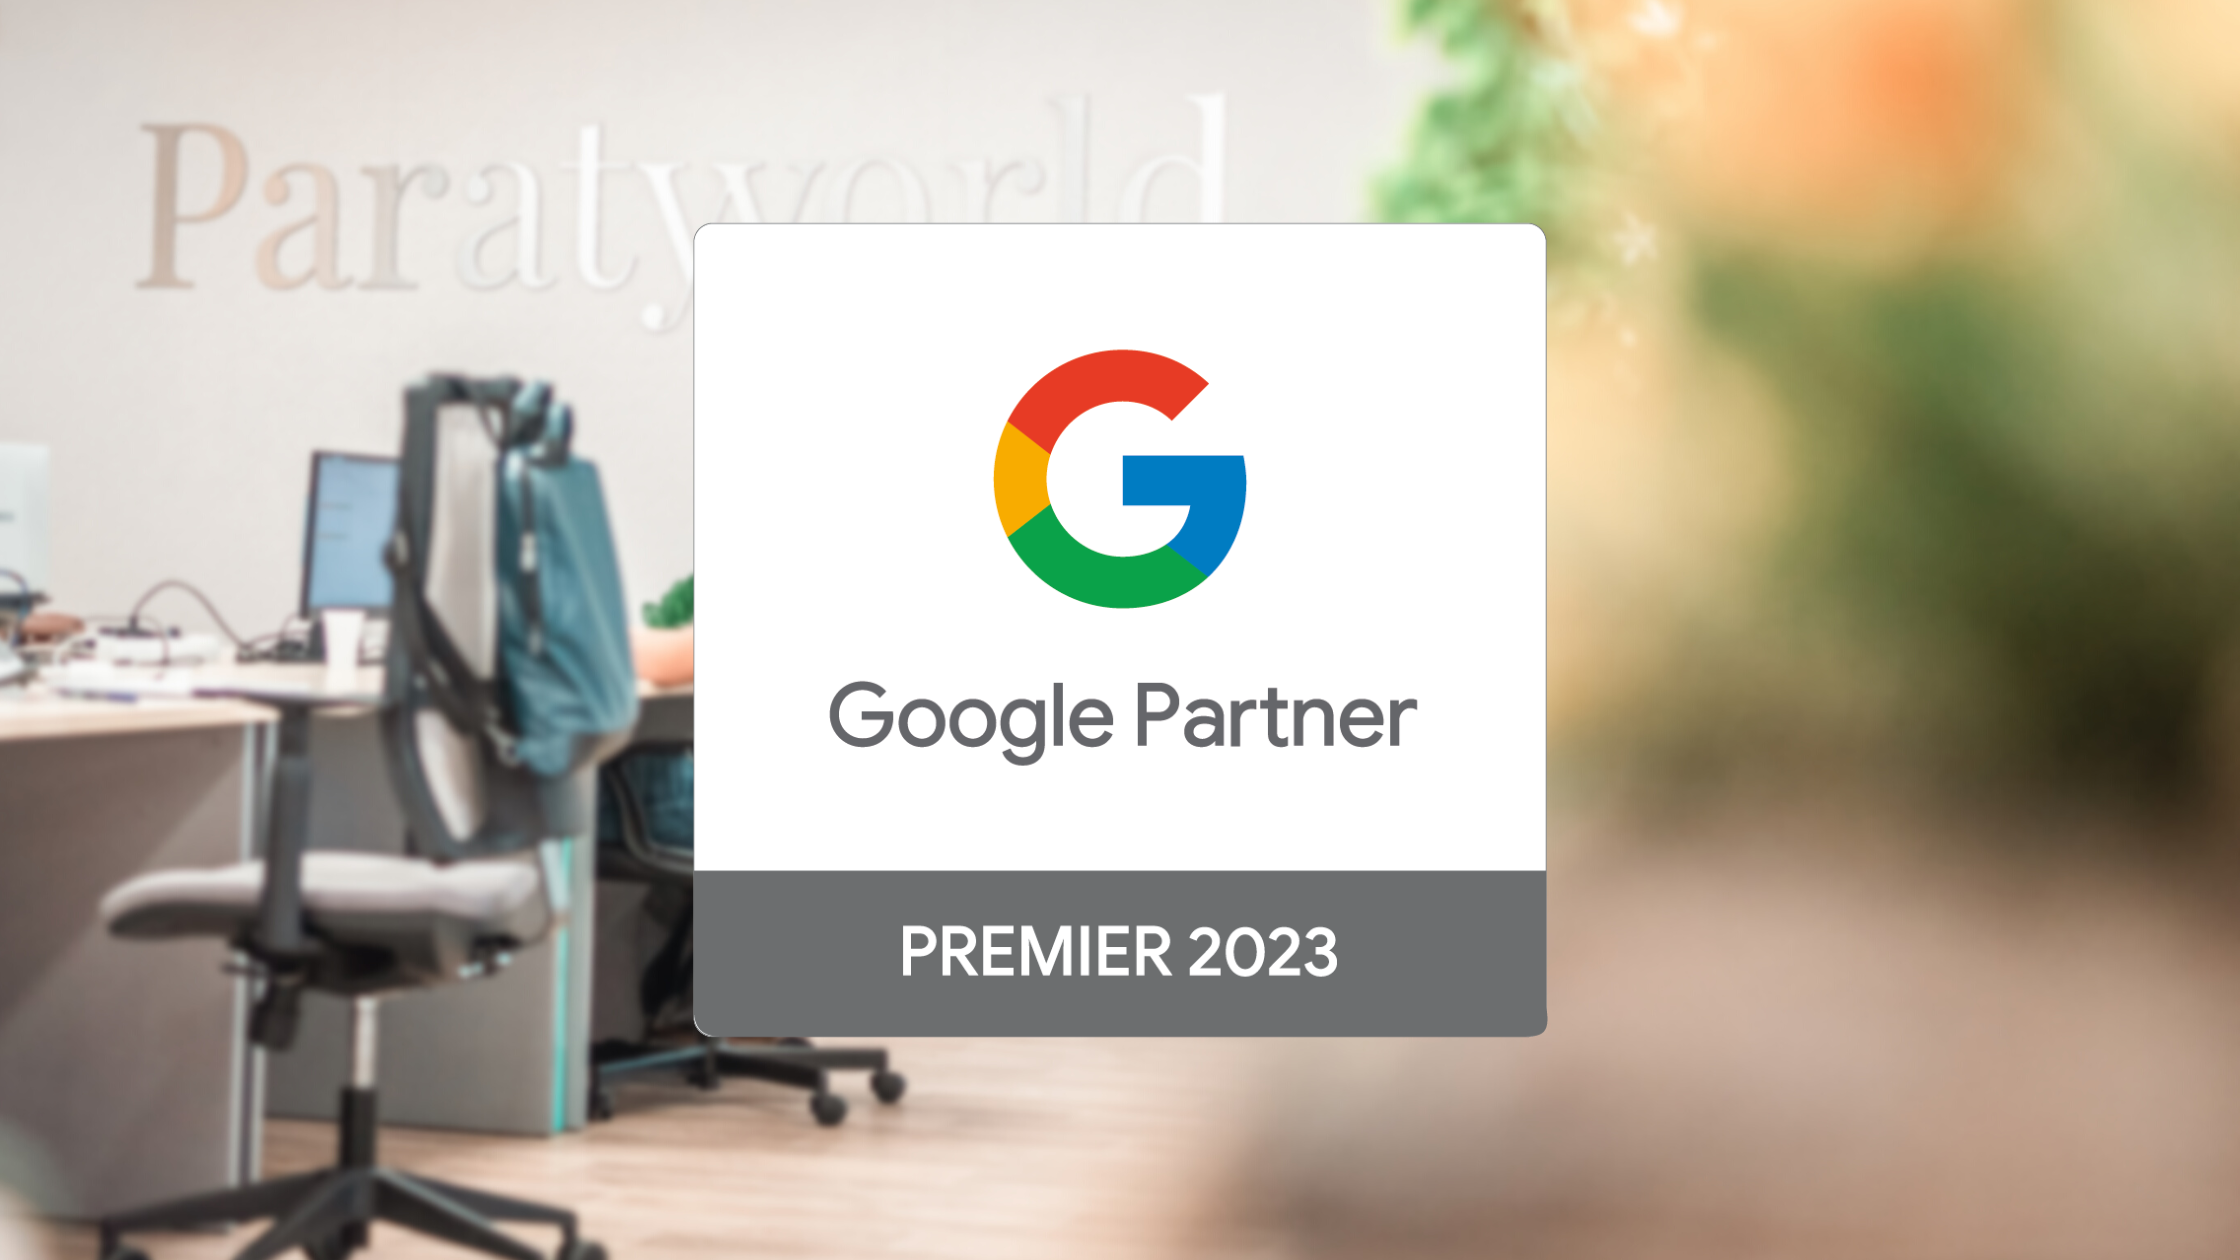 Paraty Tech obtém o reconhecimento de Google Partner Premier 2023